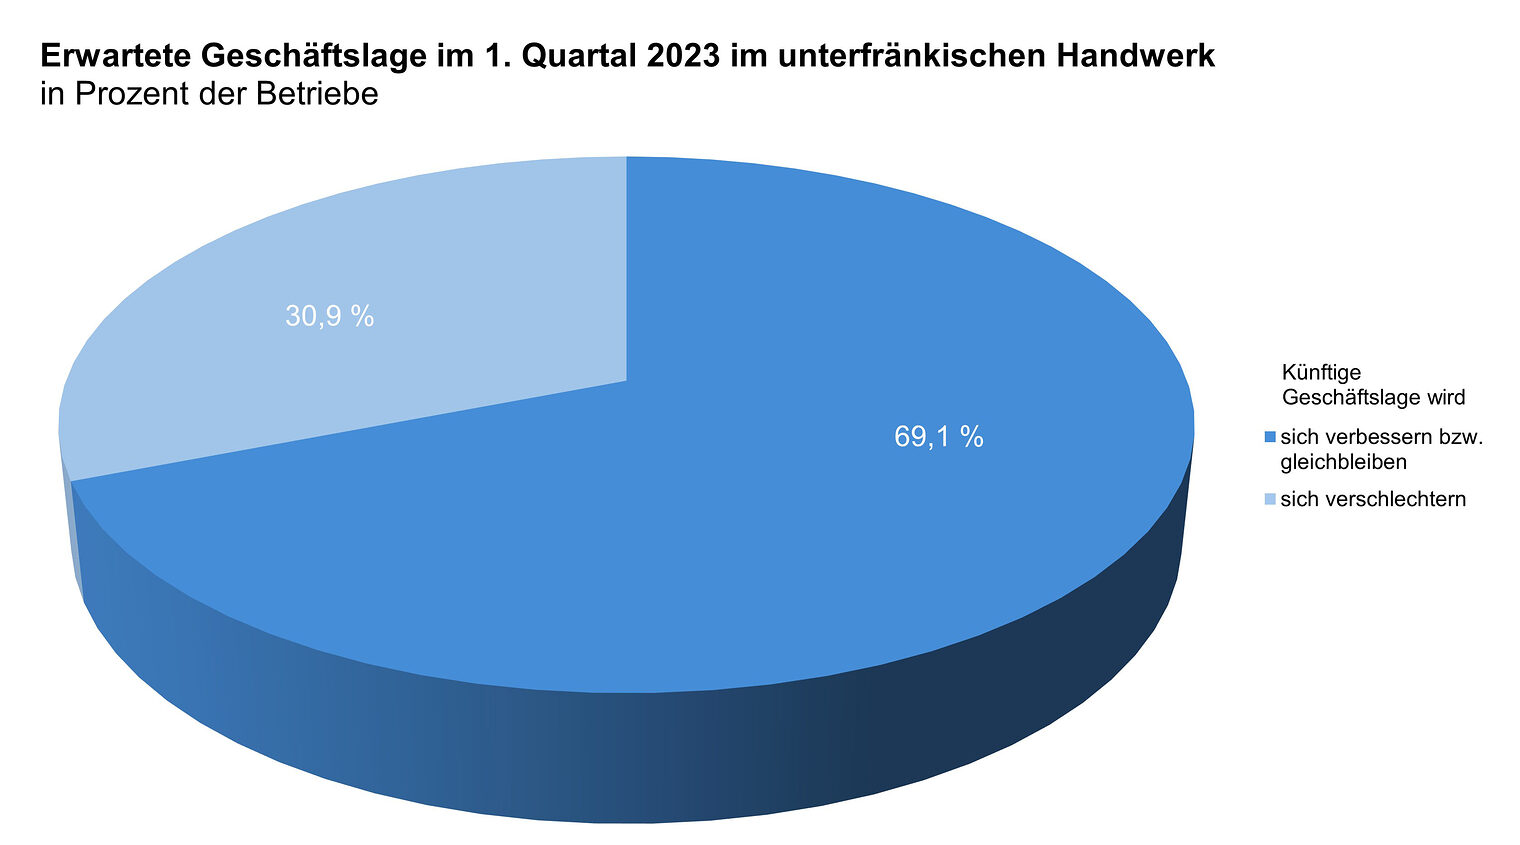 Erwartete Geschäftslage im unterfränkischen Handwerk für das 1. Quartal 2023